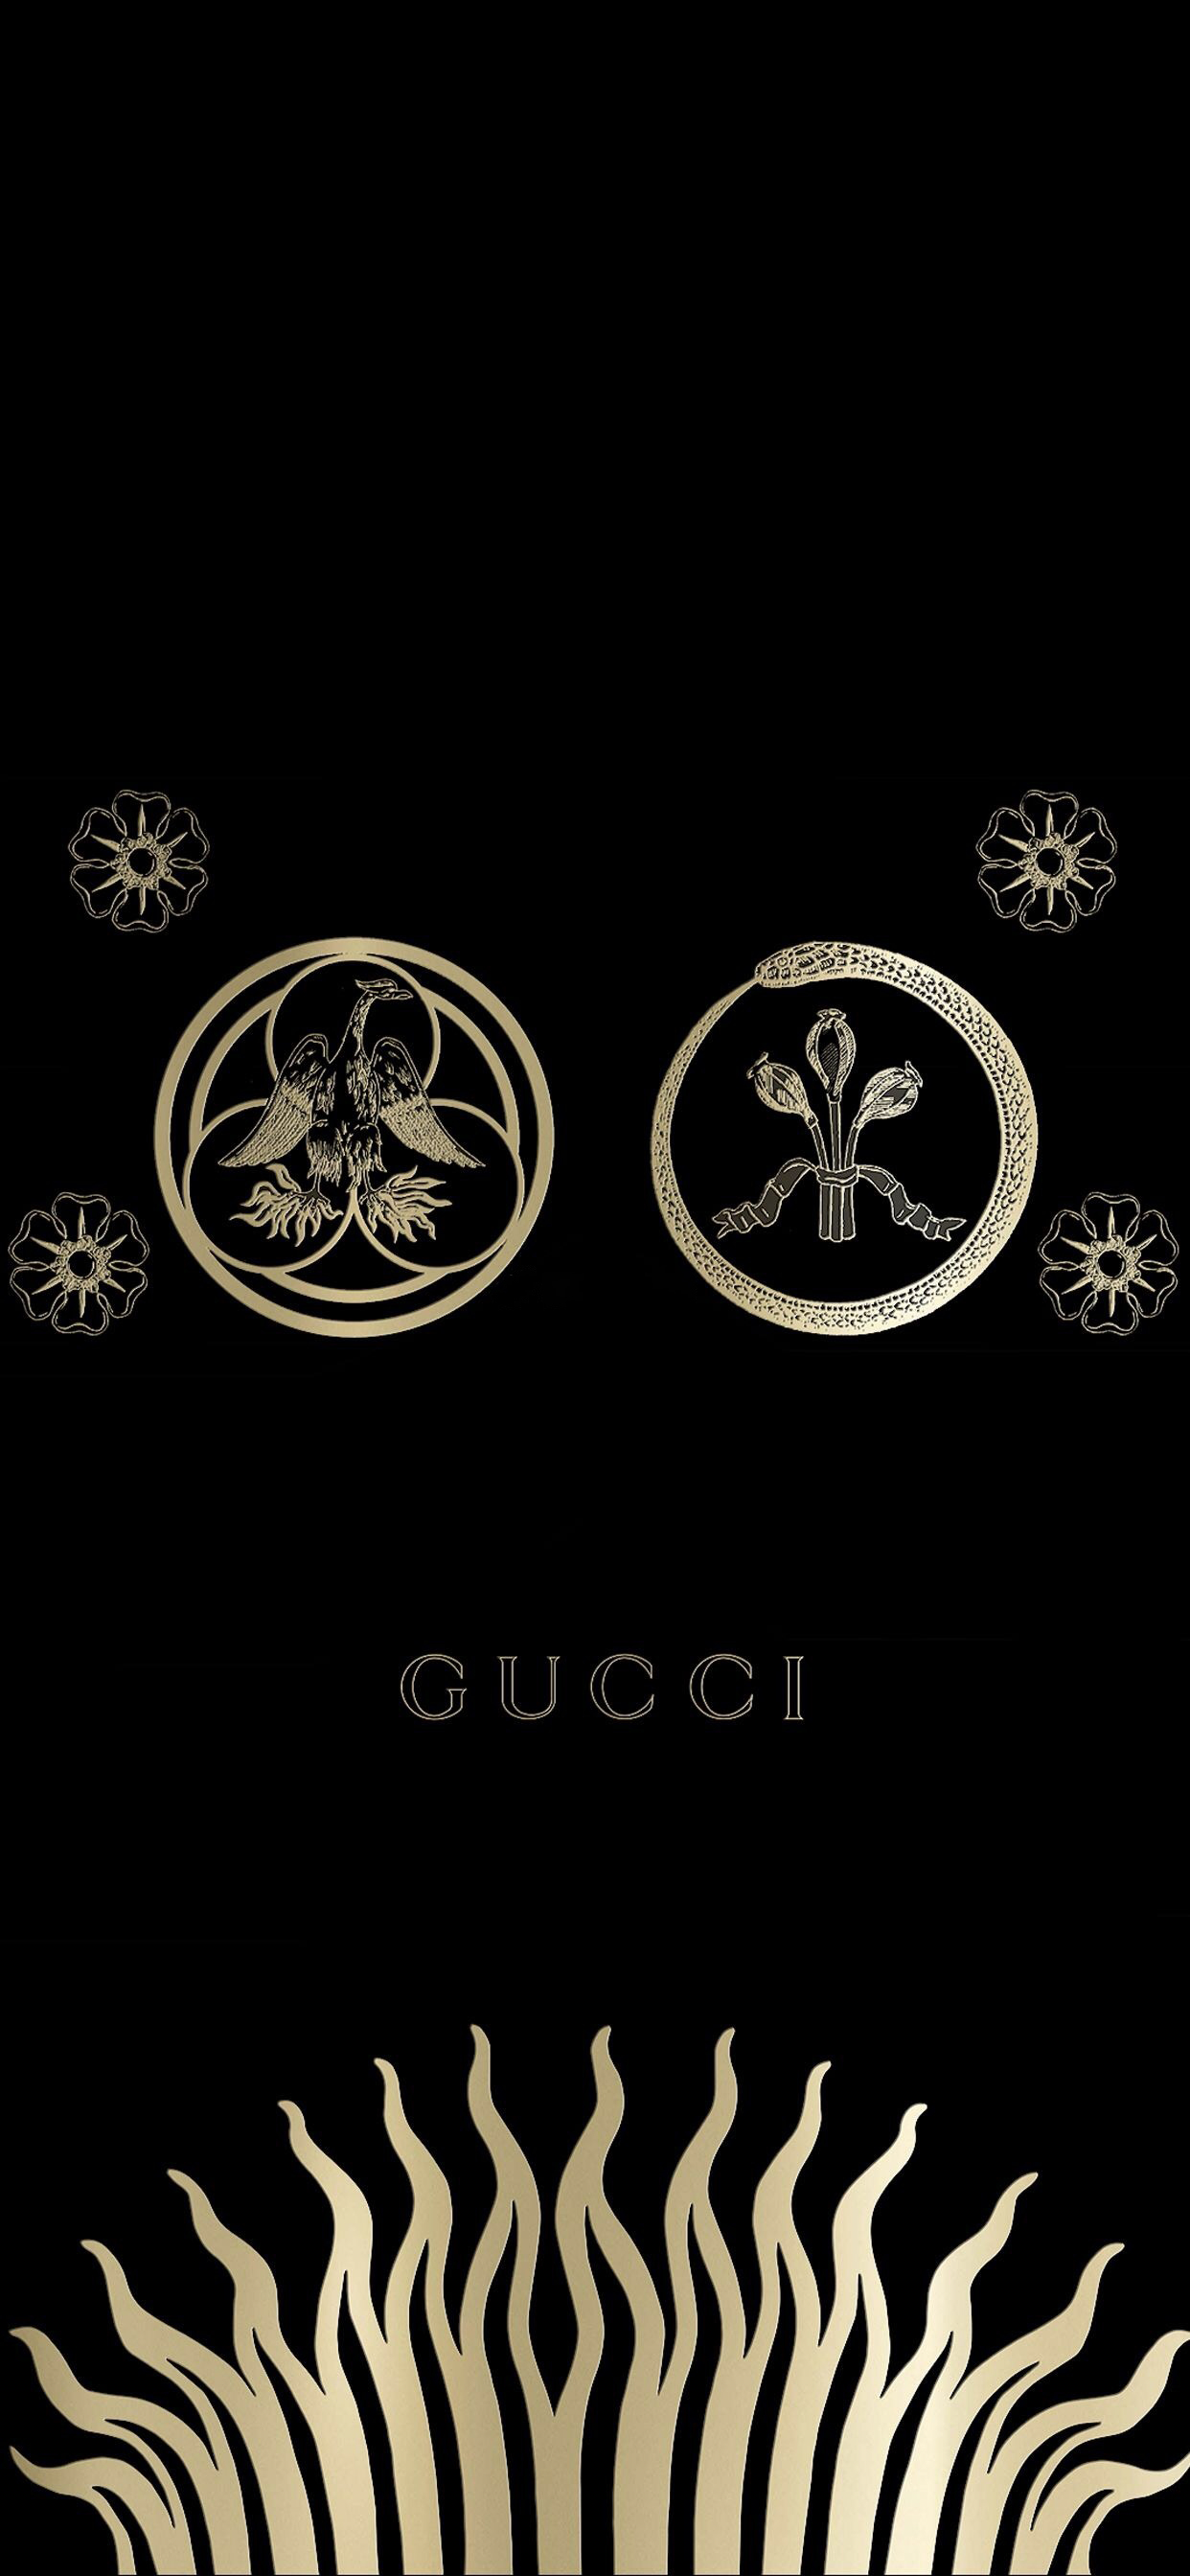 Trẻ hóa xa xỉ (kỳ 3): Gucci đã chinh phục khách hàng Millennials và Gen Z  như thế nào?